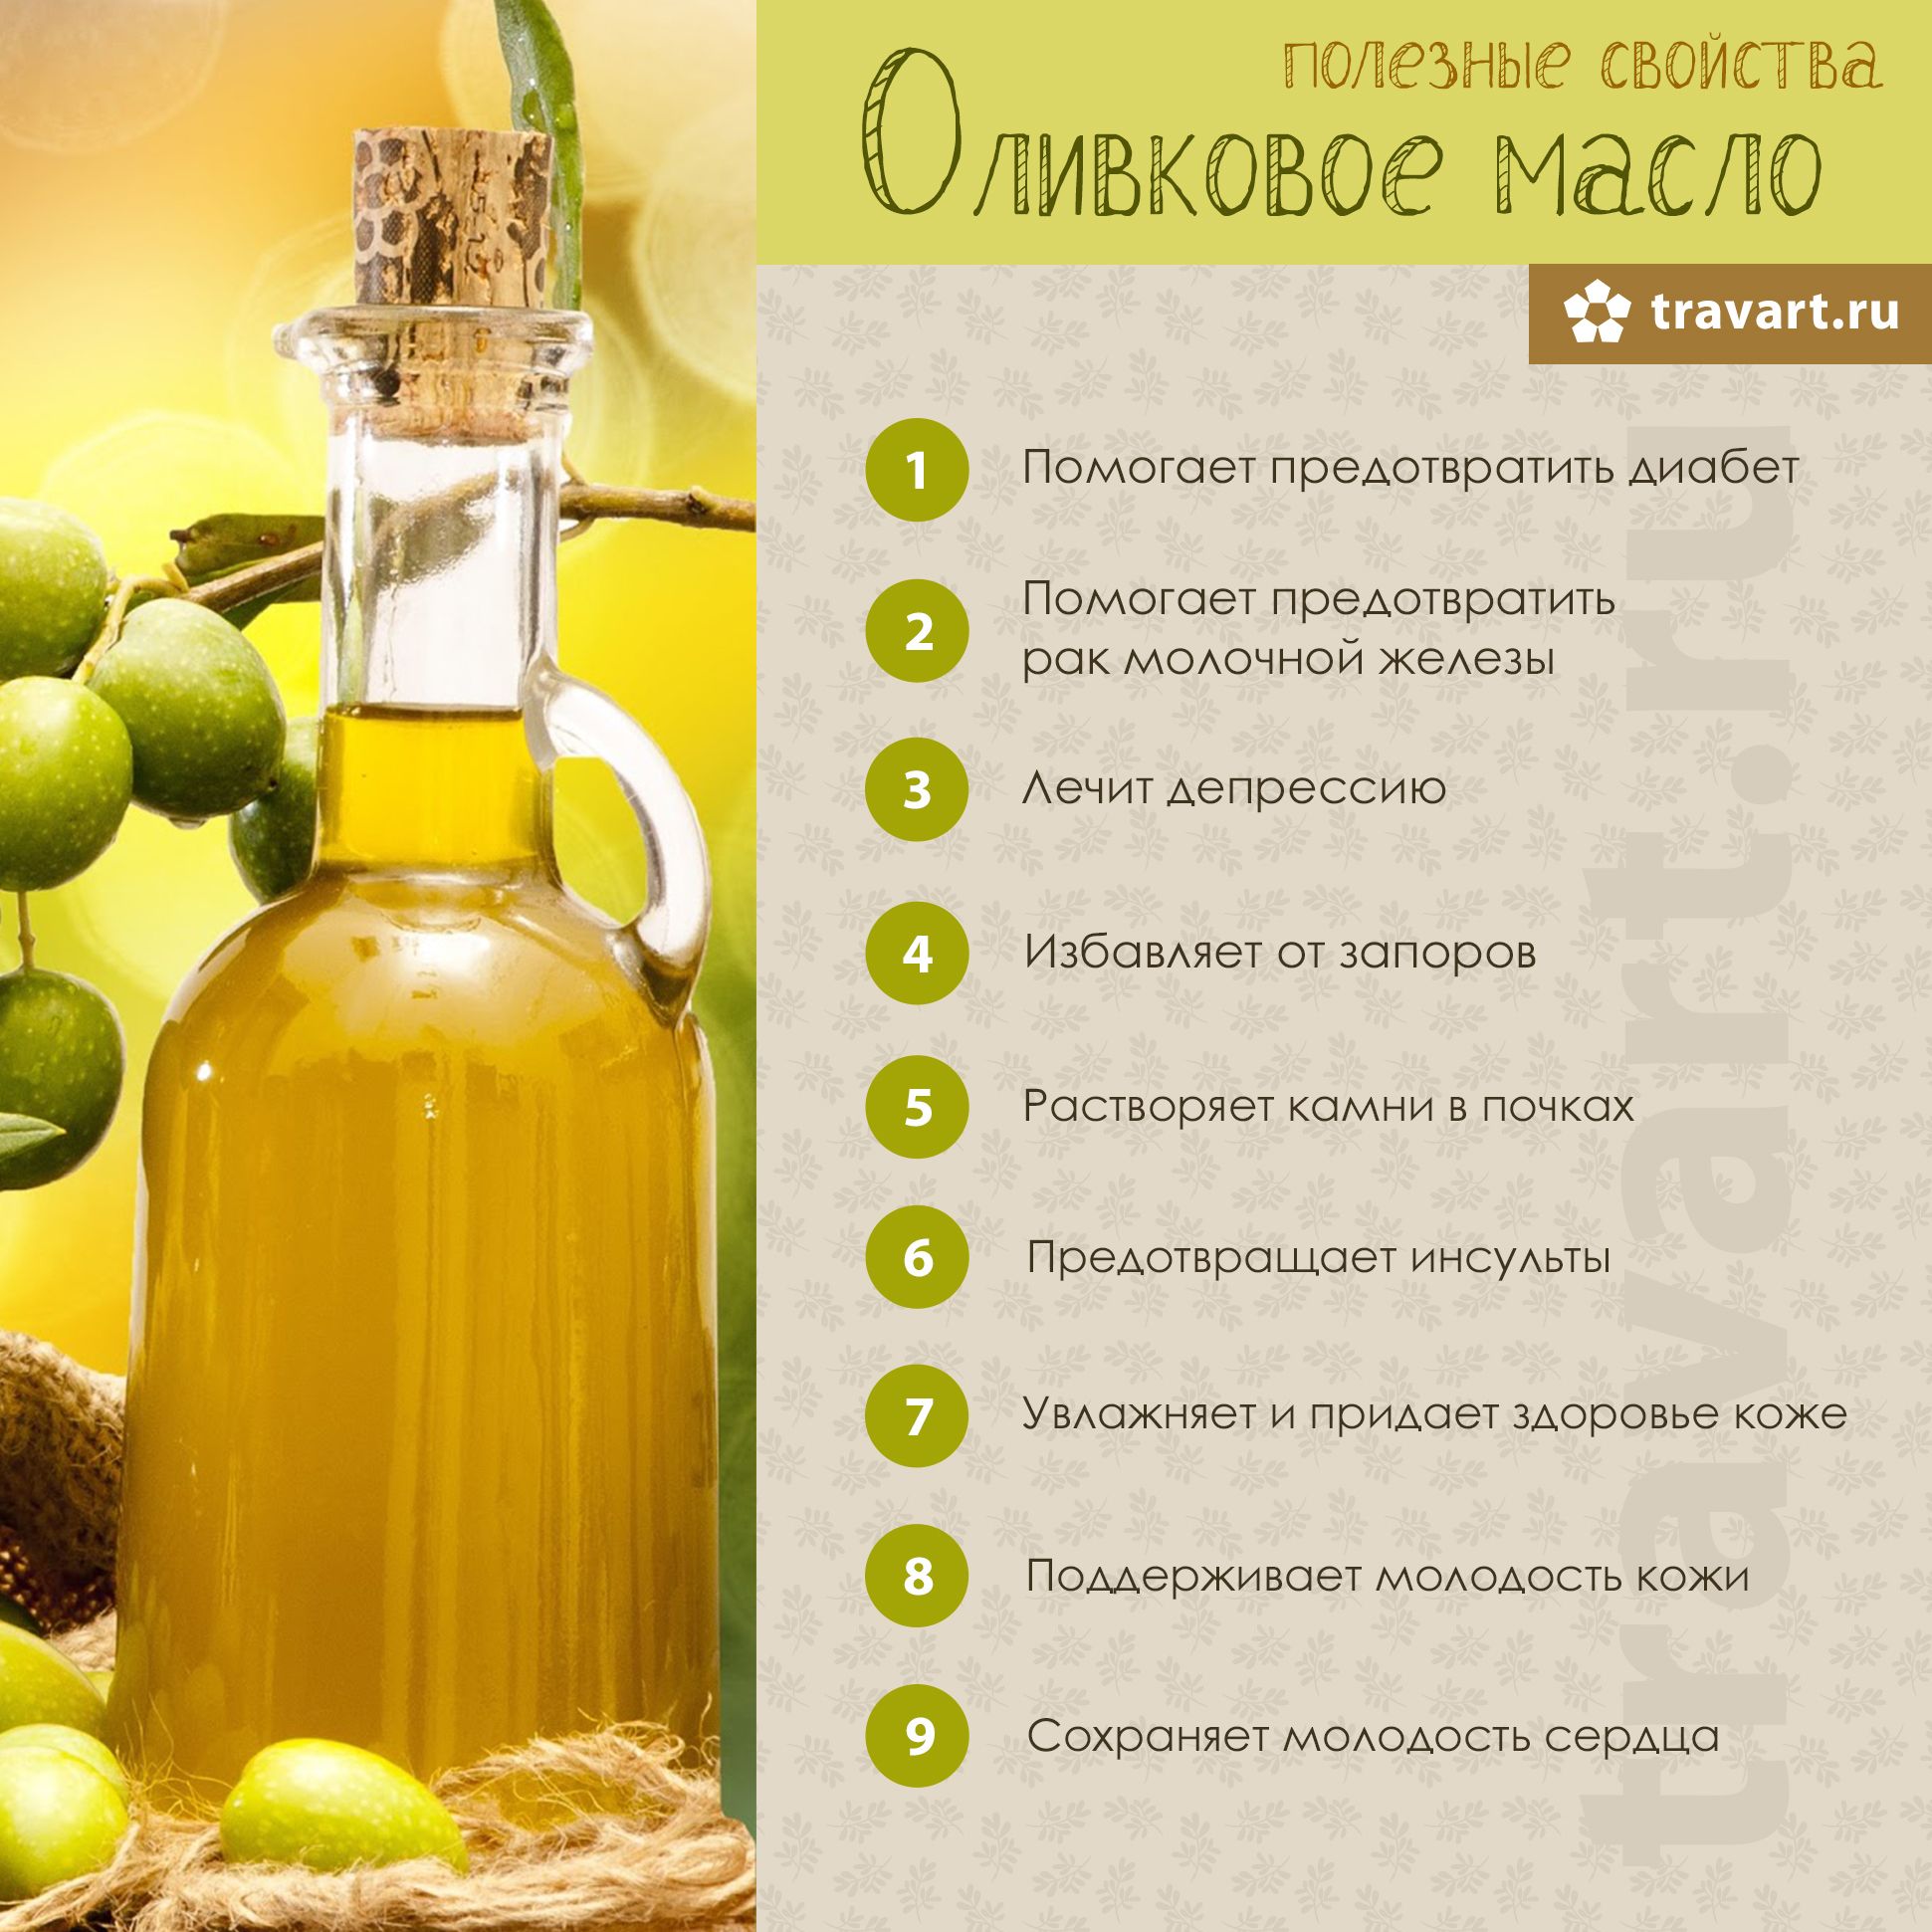 Оливковое масло польза и вред как принимать нерафинированное